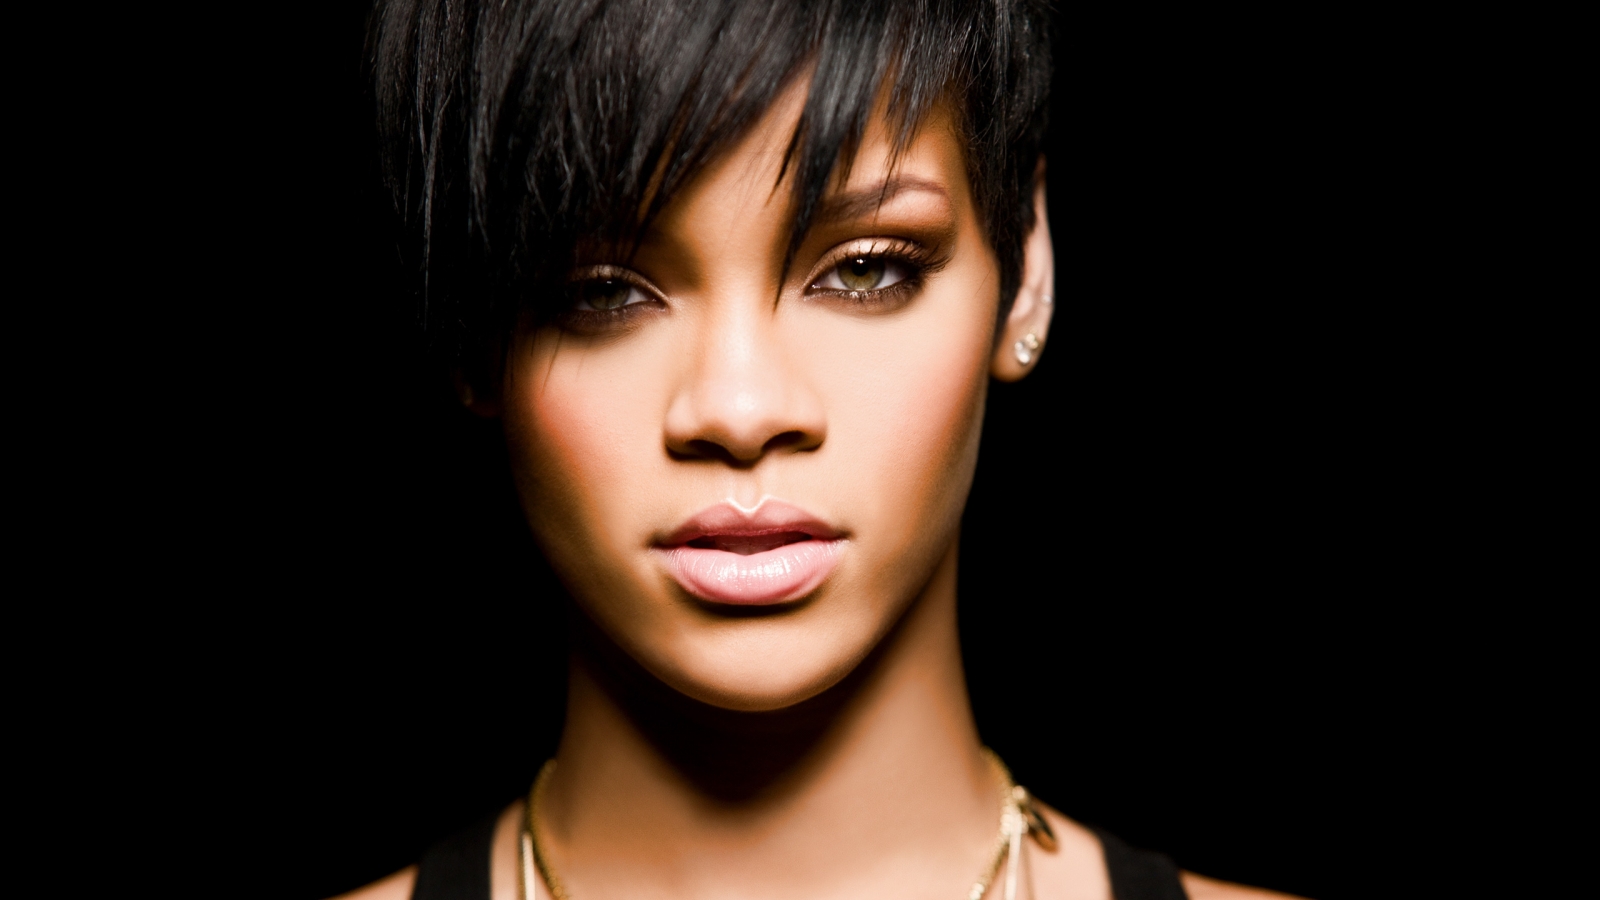 Rihanna for 1600 x 900 HDTV resolution